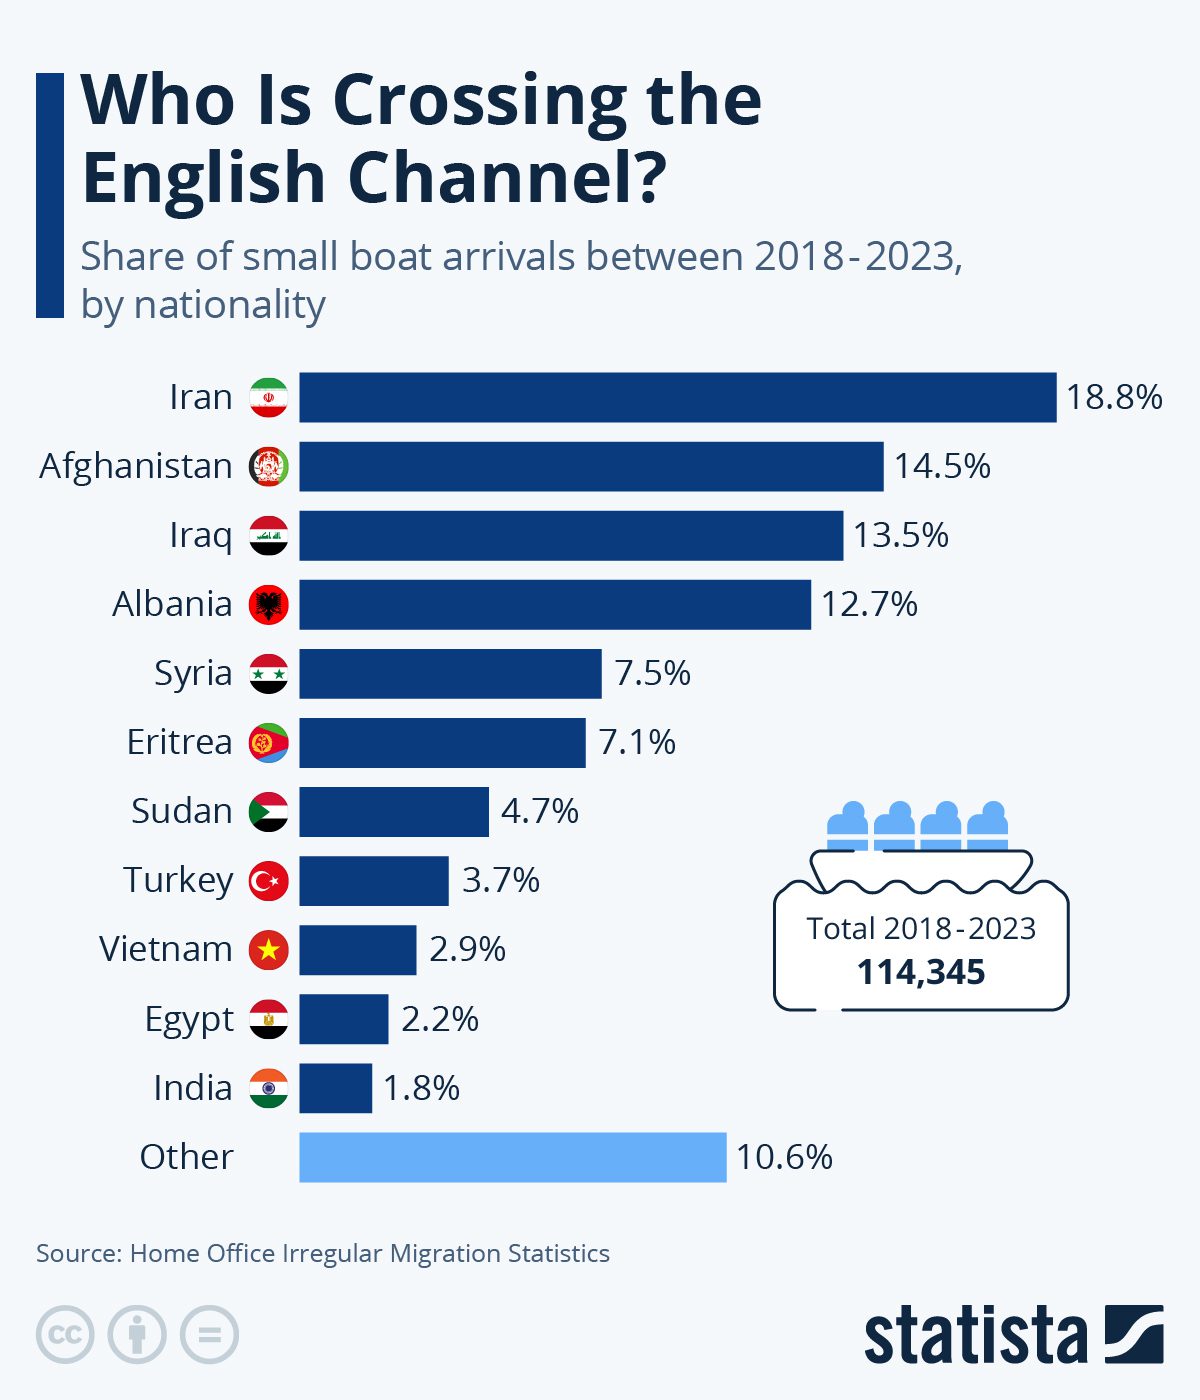 البلدان الأكثر تصديرًا للمهاجرين غير الشرعيين عبر القناة الإنجليزية "المانش"